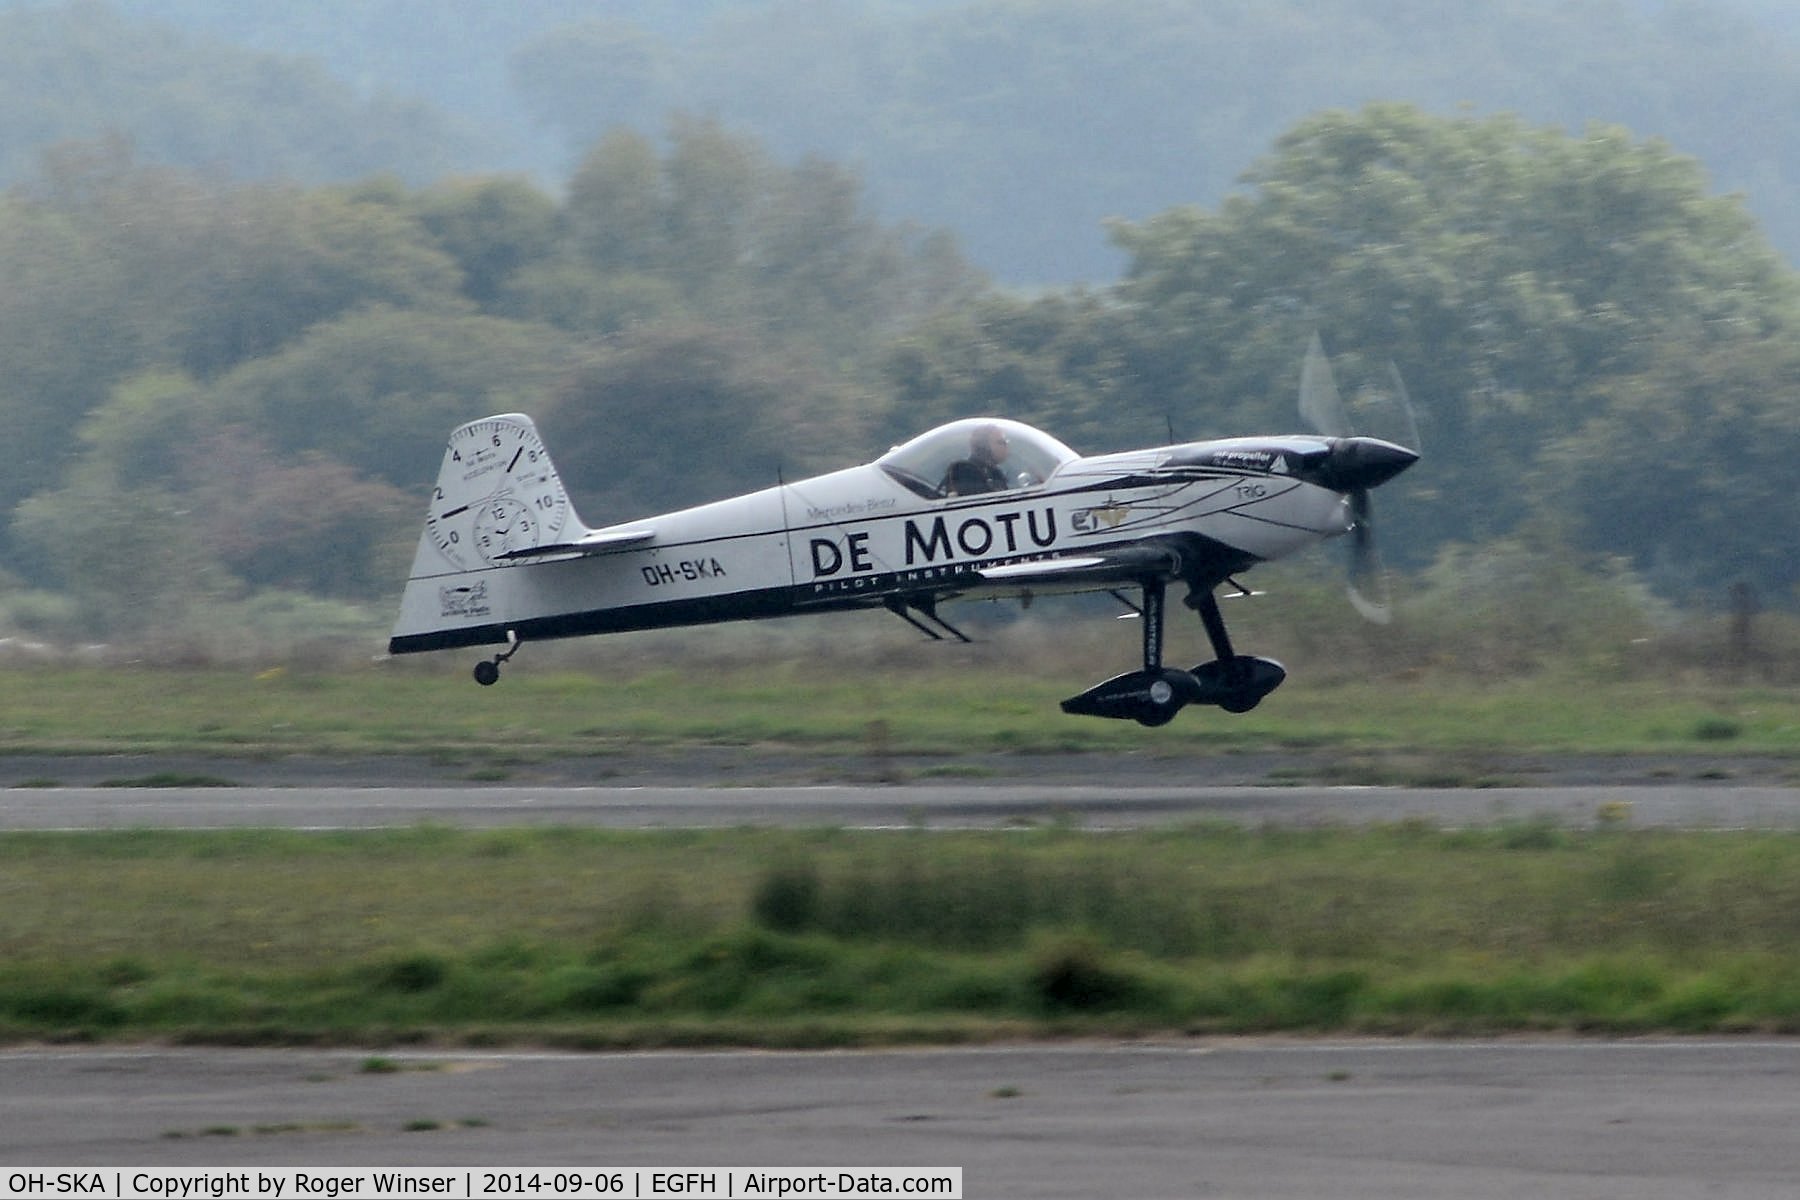 OH-SKA, 2007 Mudry CAP-232 C/N 30, Visiting CAP-232 departing Runway 28.